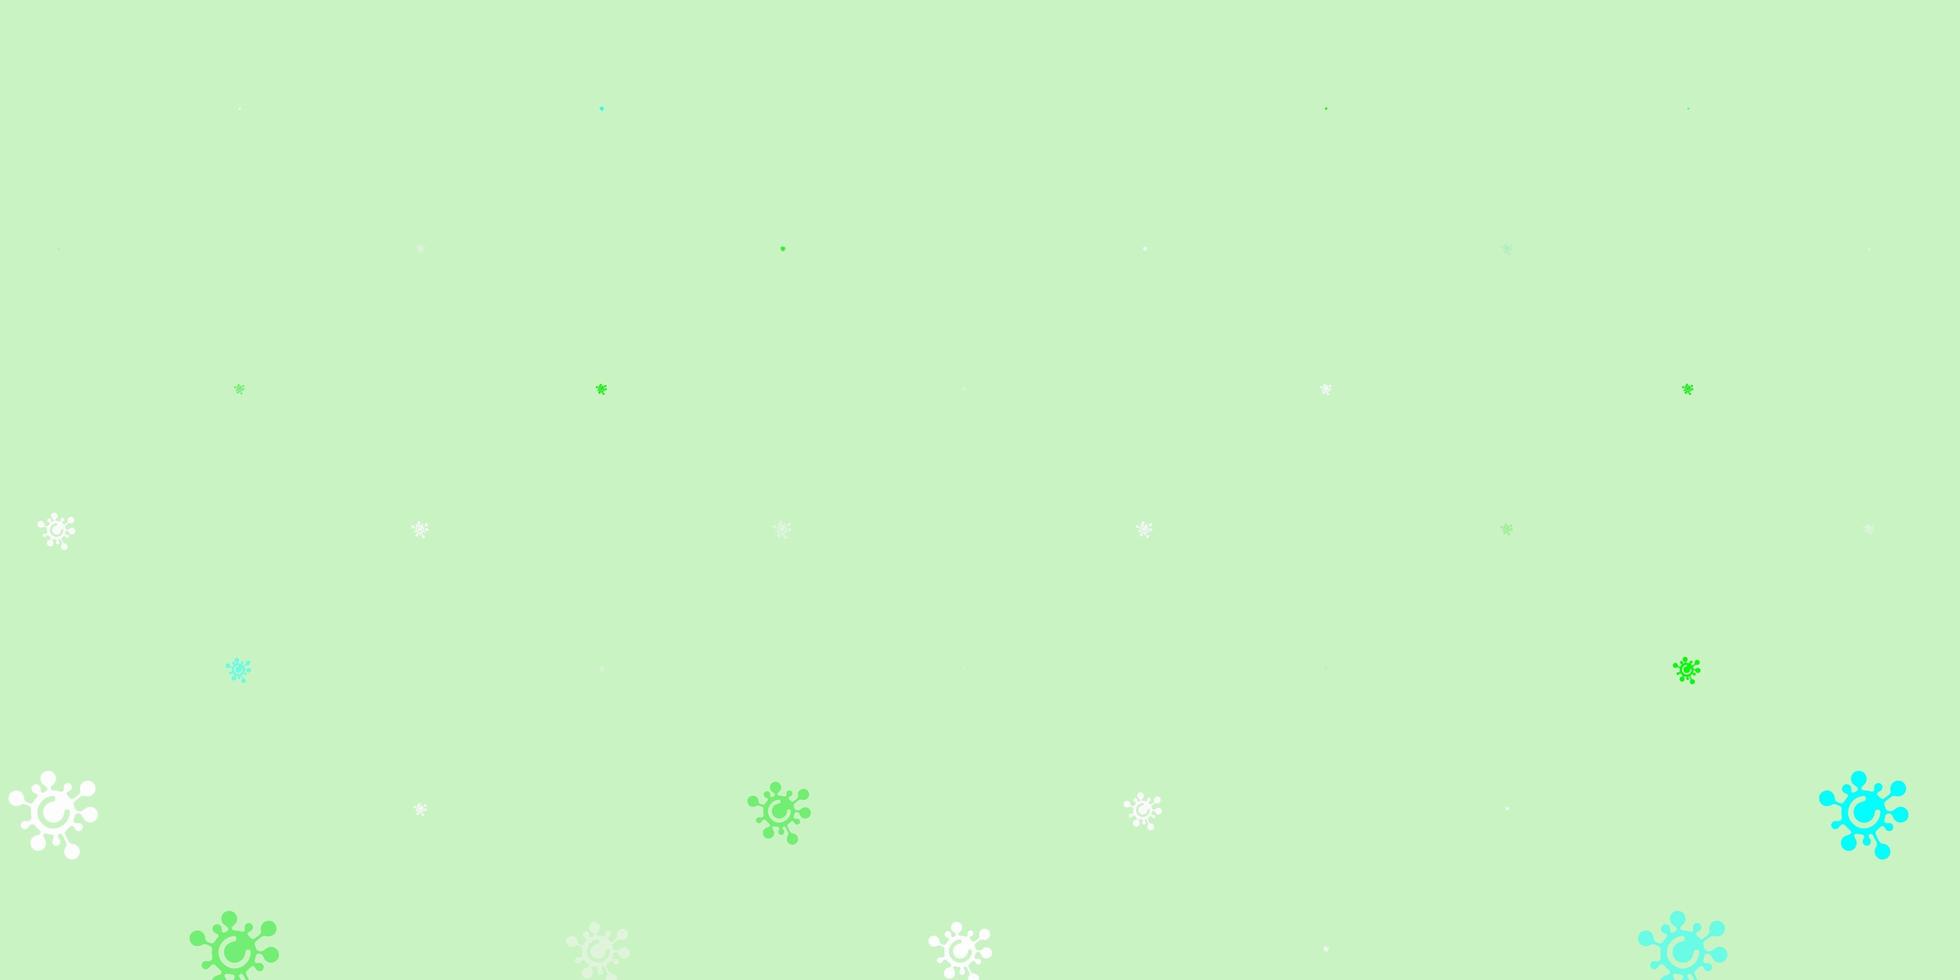 sfondo vettoriale verde chiaro con simboli covid-19.